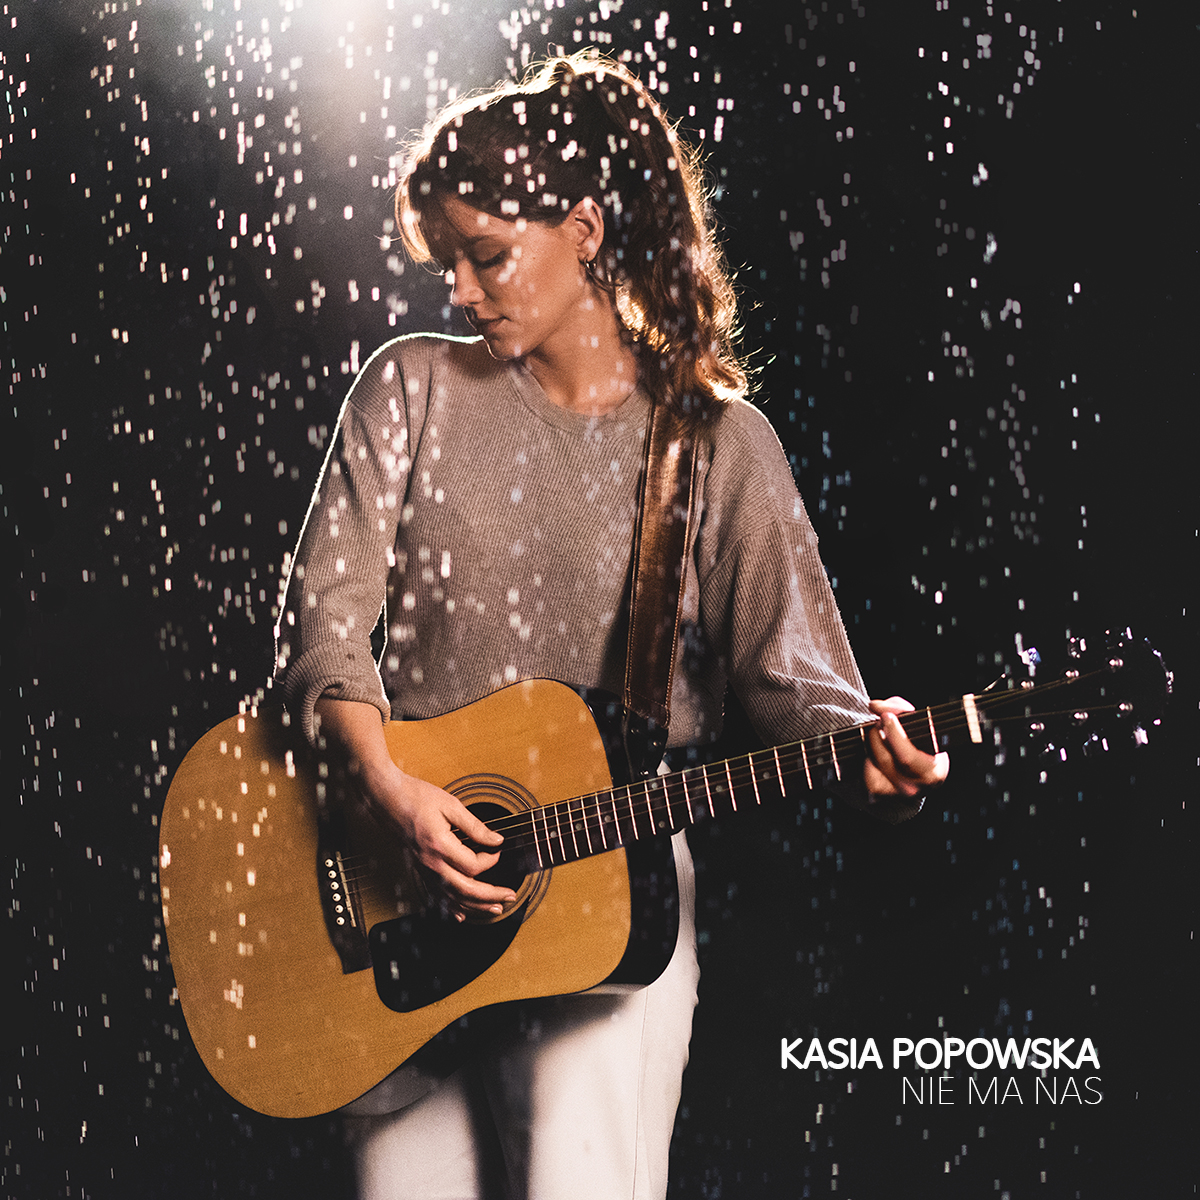 Kasia Popowska - premiera singla Nie ma nas